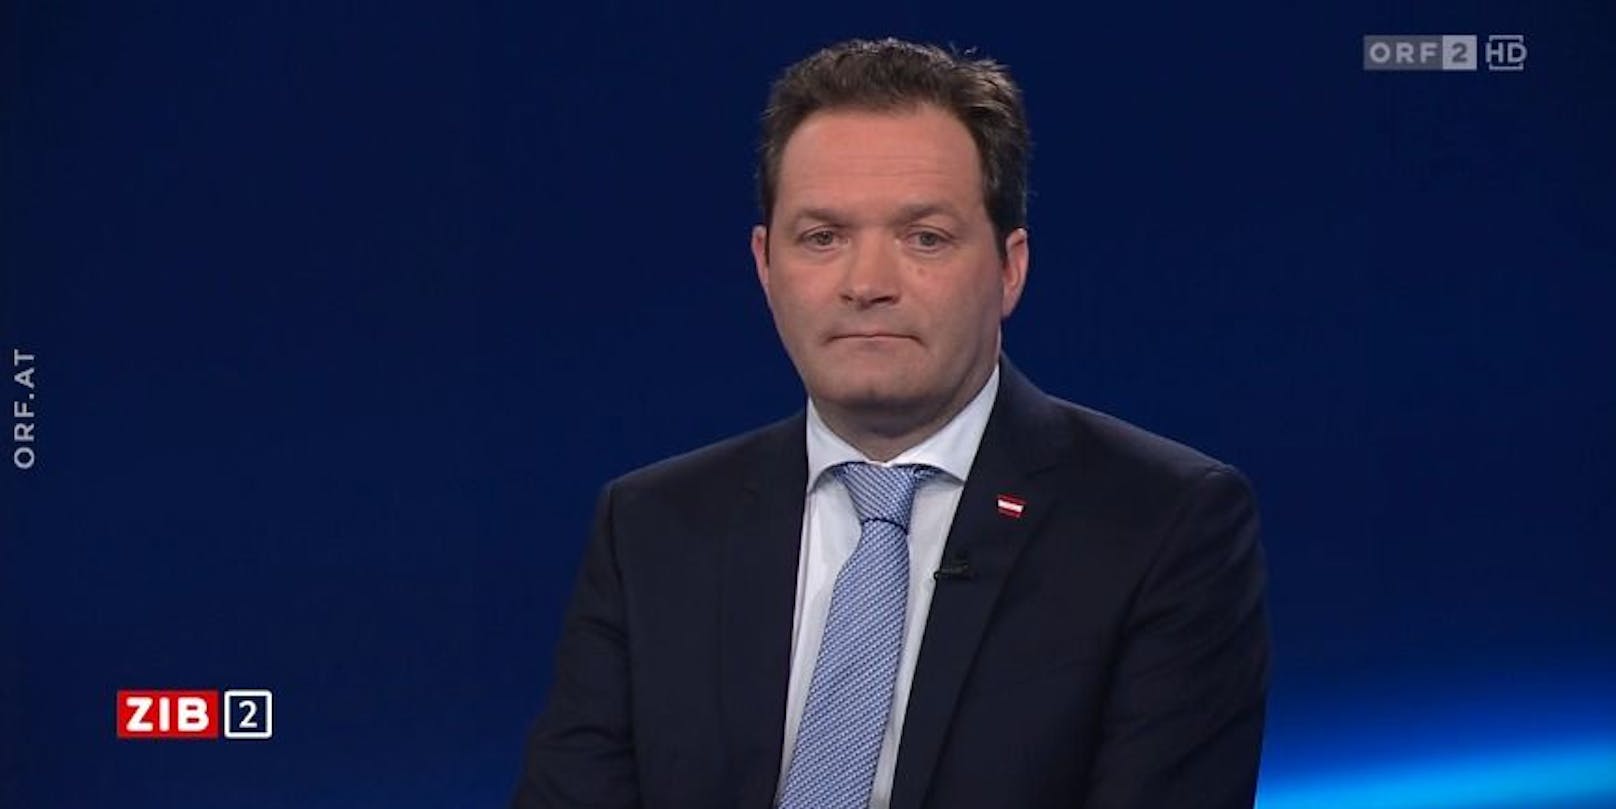 Landwirtschaftsminister Norbert Totschnig (ÖVP) in der ORF-"ZIB2" am Sonntagabend.